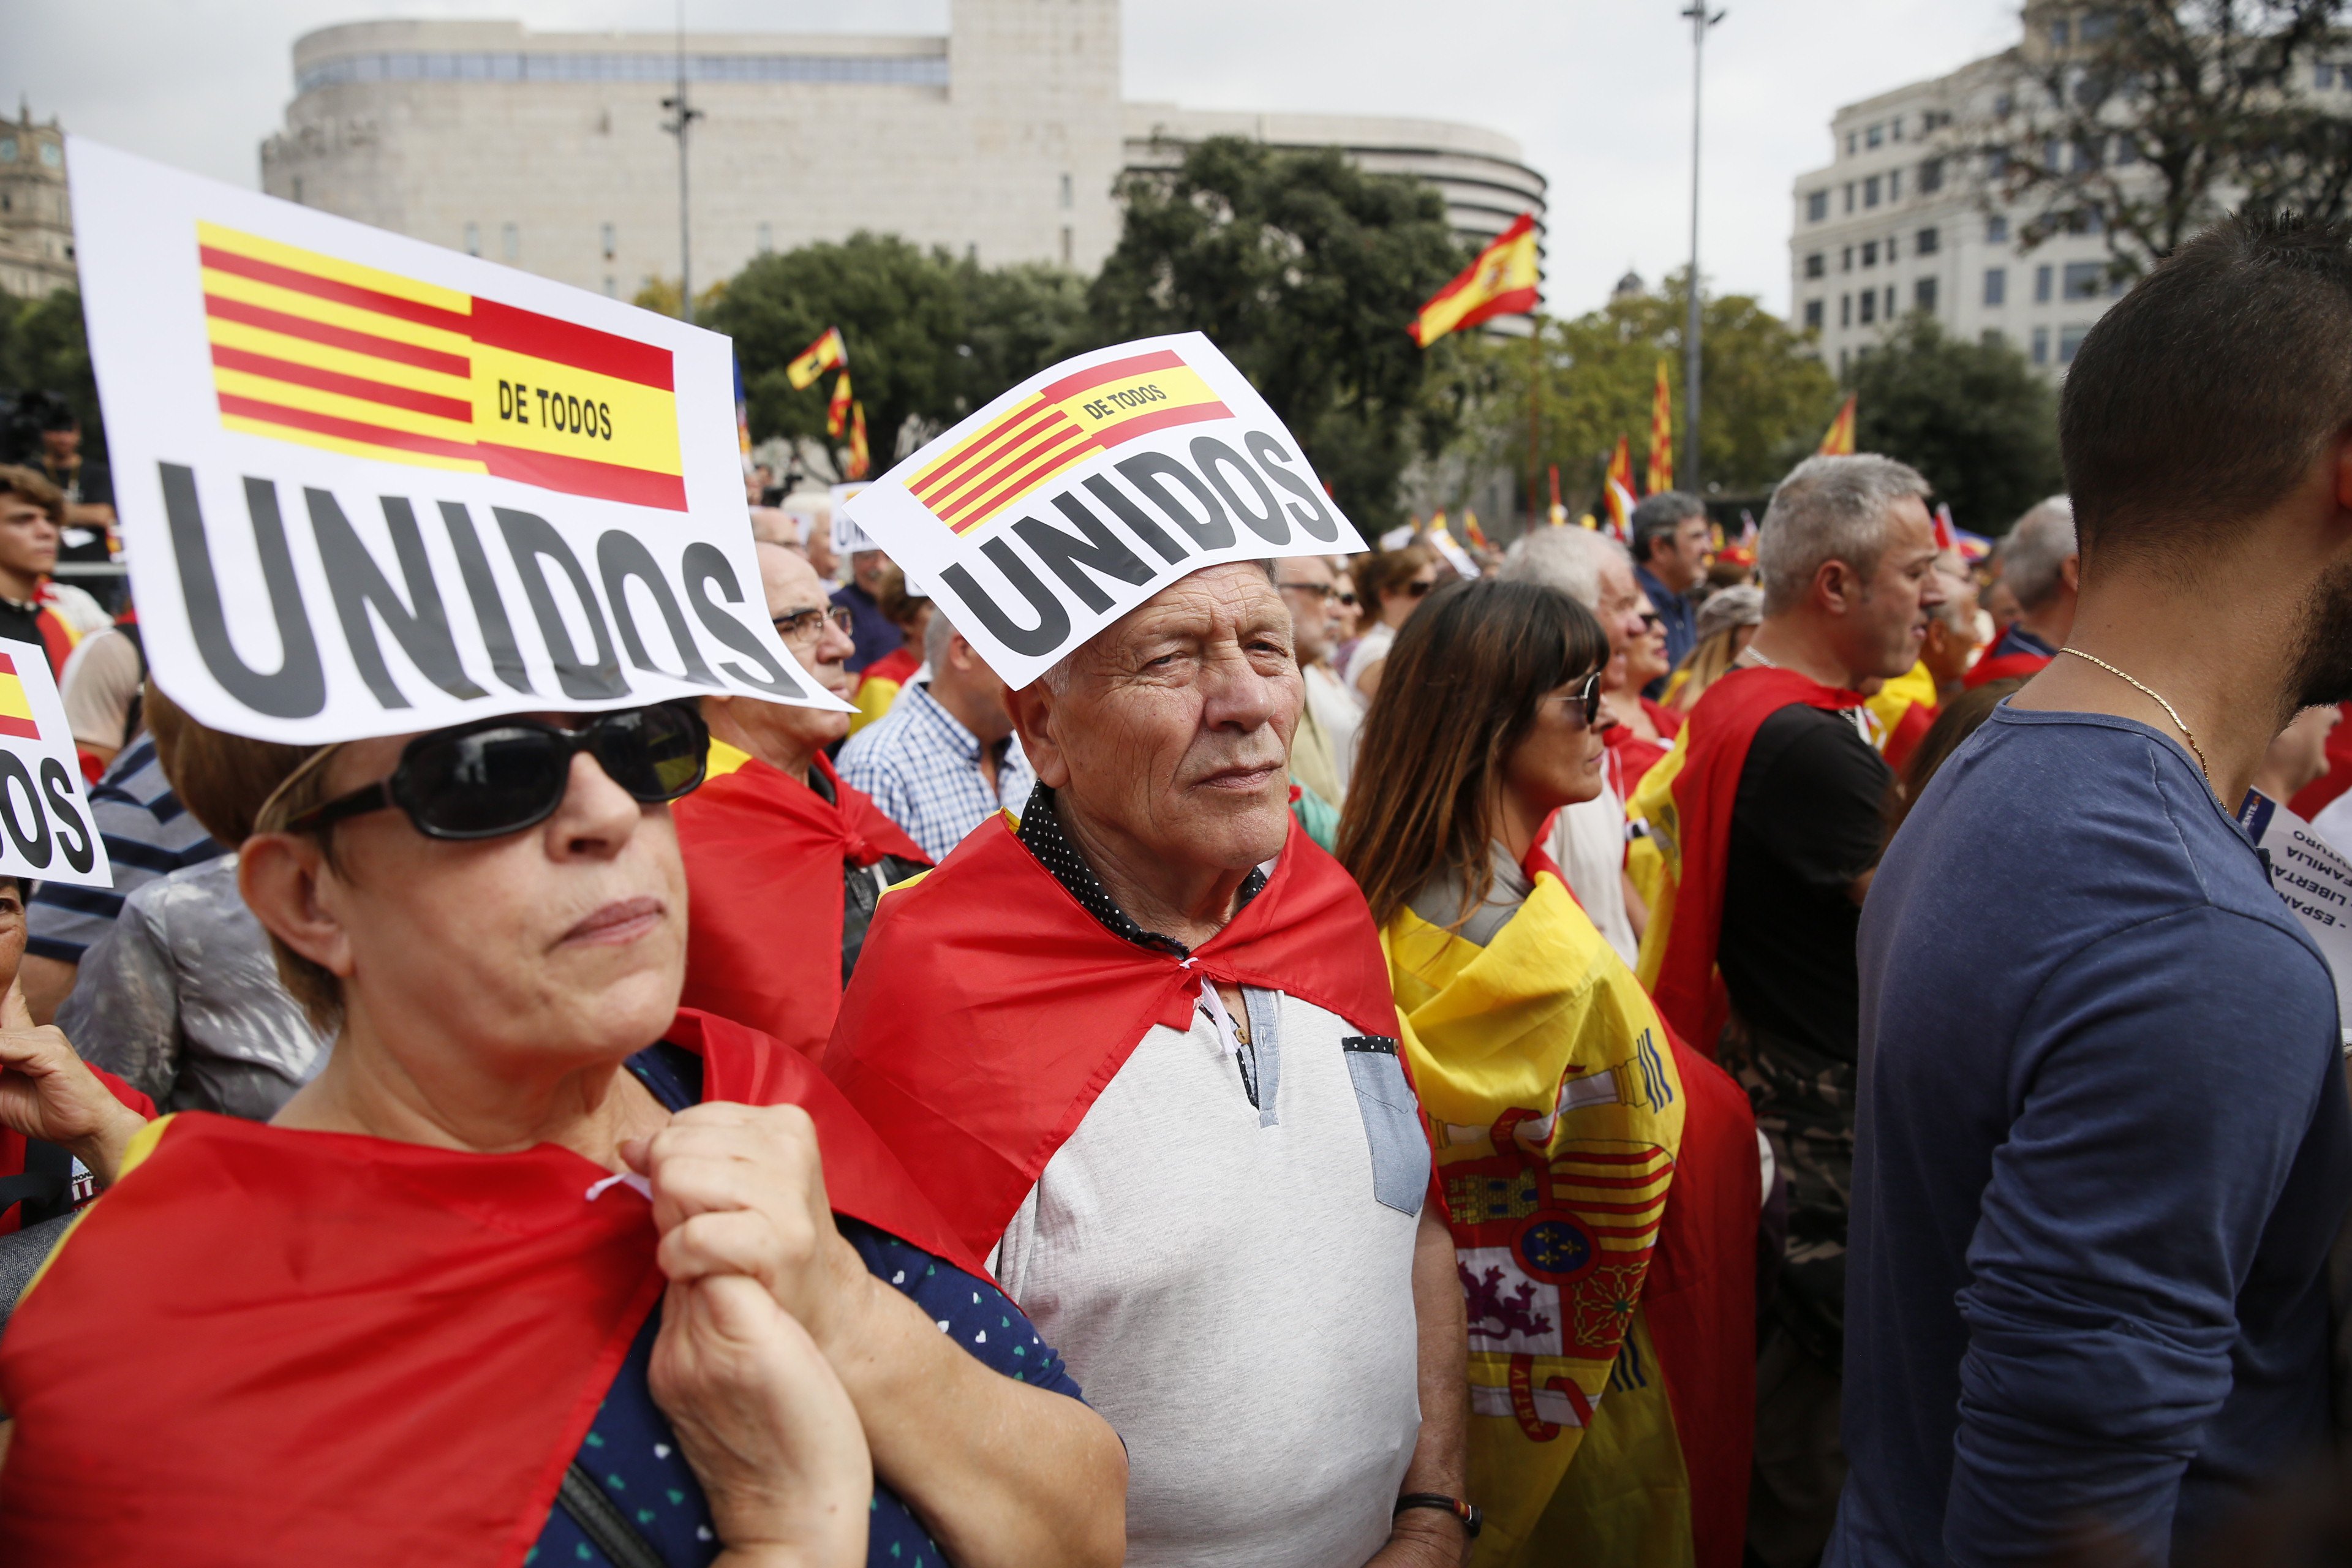 El unionismo se resquebraja en Barcelona, con 5 opciones y poco acuerdo